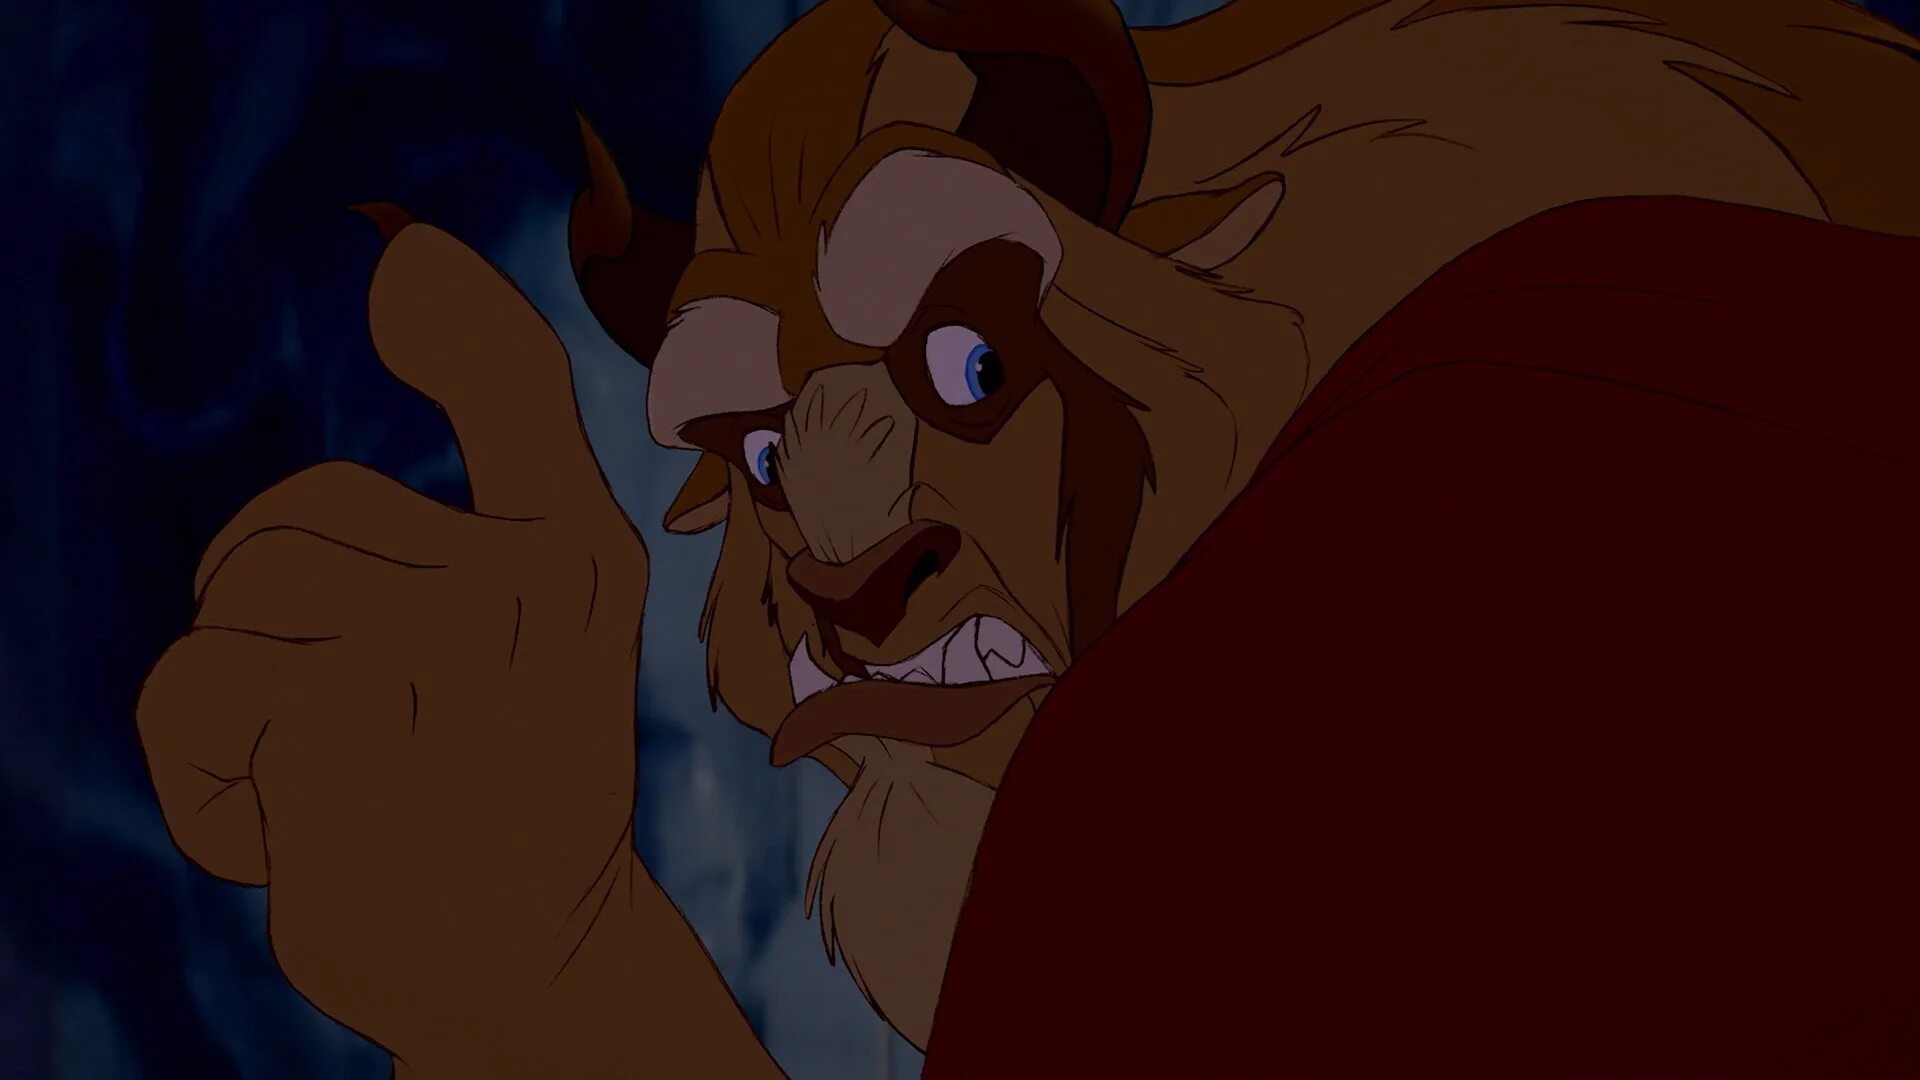 Мой опекун чудовище. Beauty and the Beast 1991 screencaps. Beauty and the Beast Disney screencaps. Рога чудовища из красавица и чудовище.